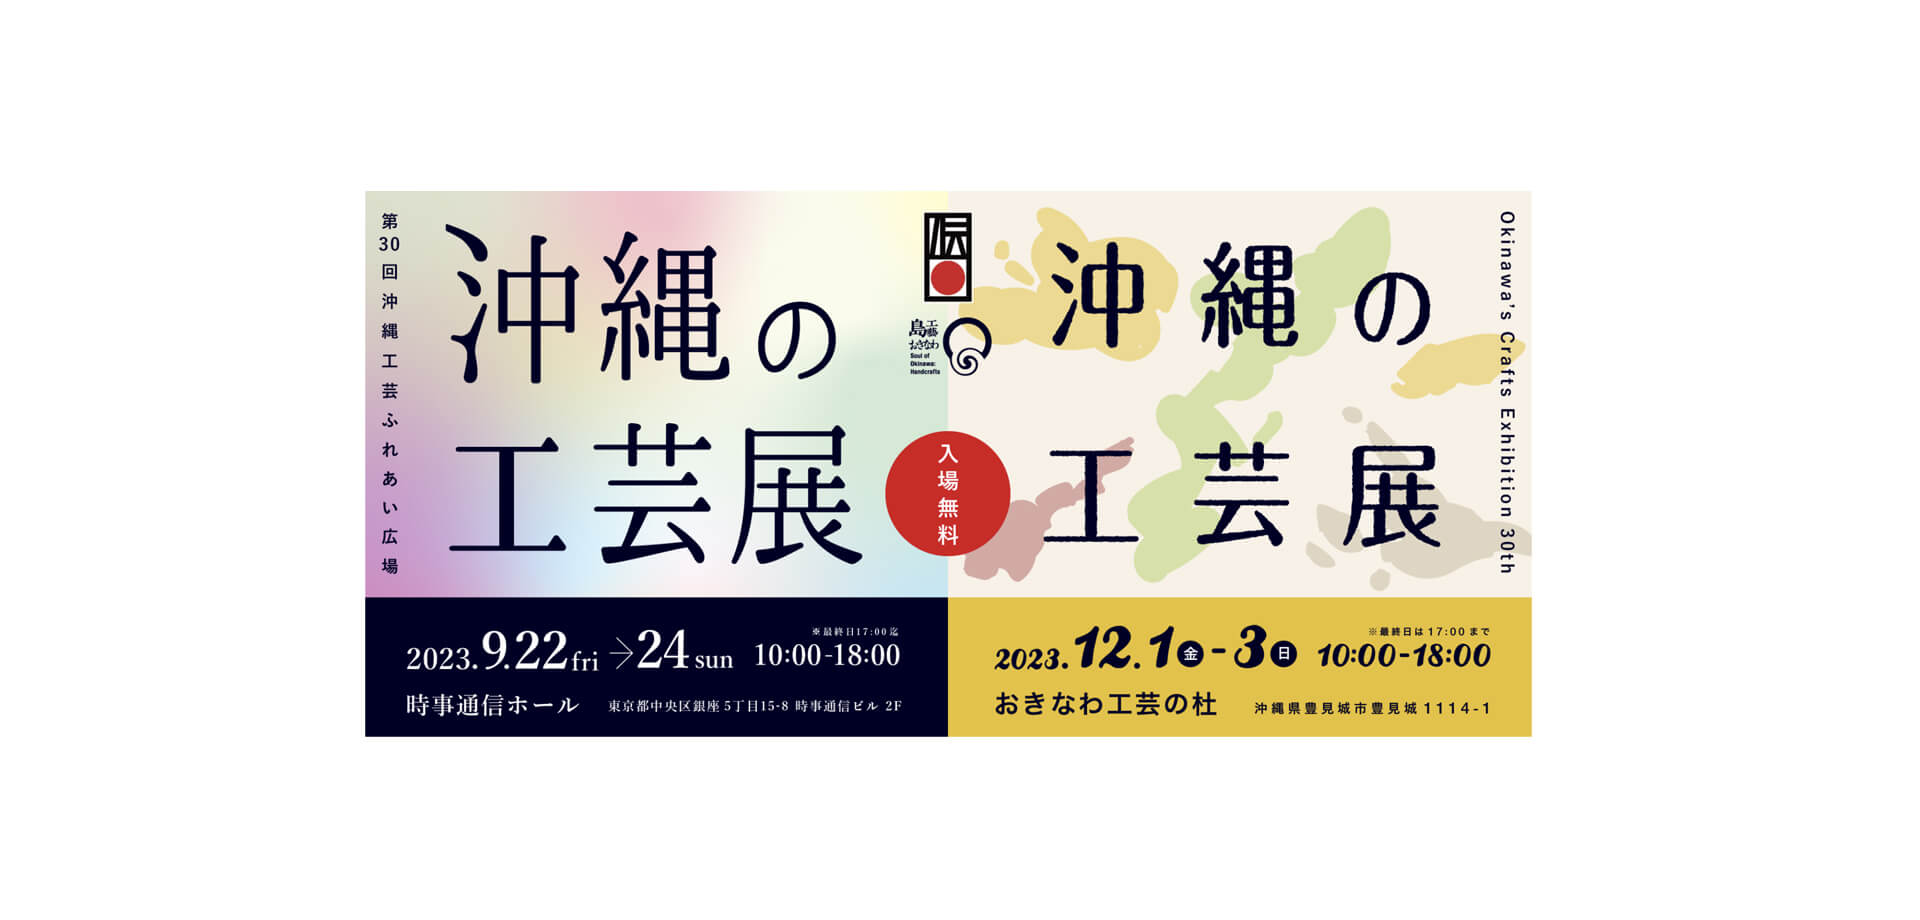 沖縄の工芸展ポスター